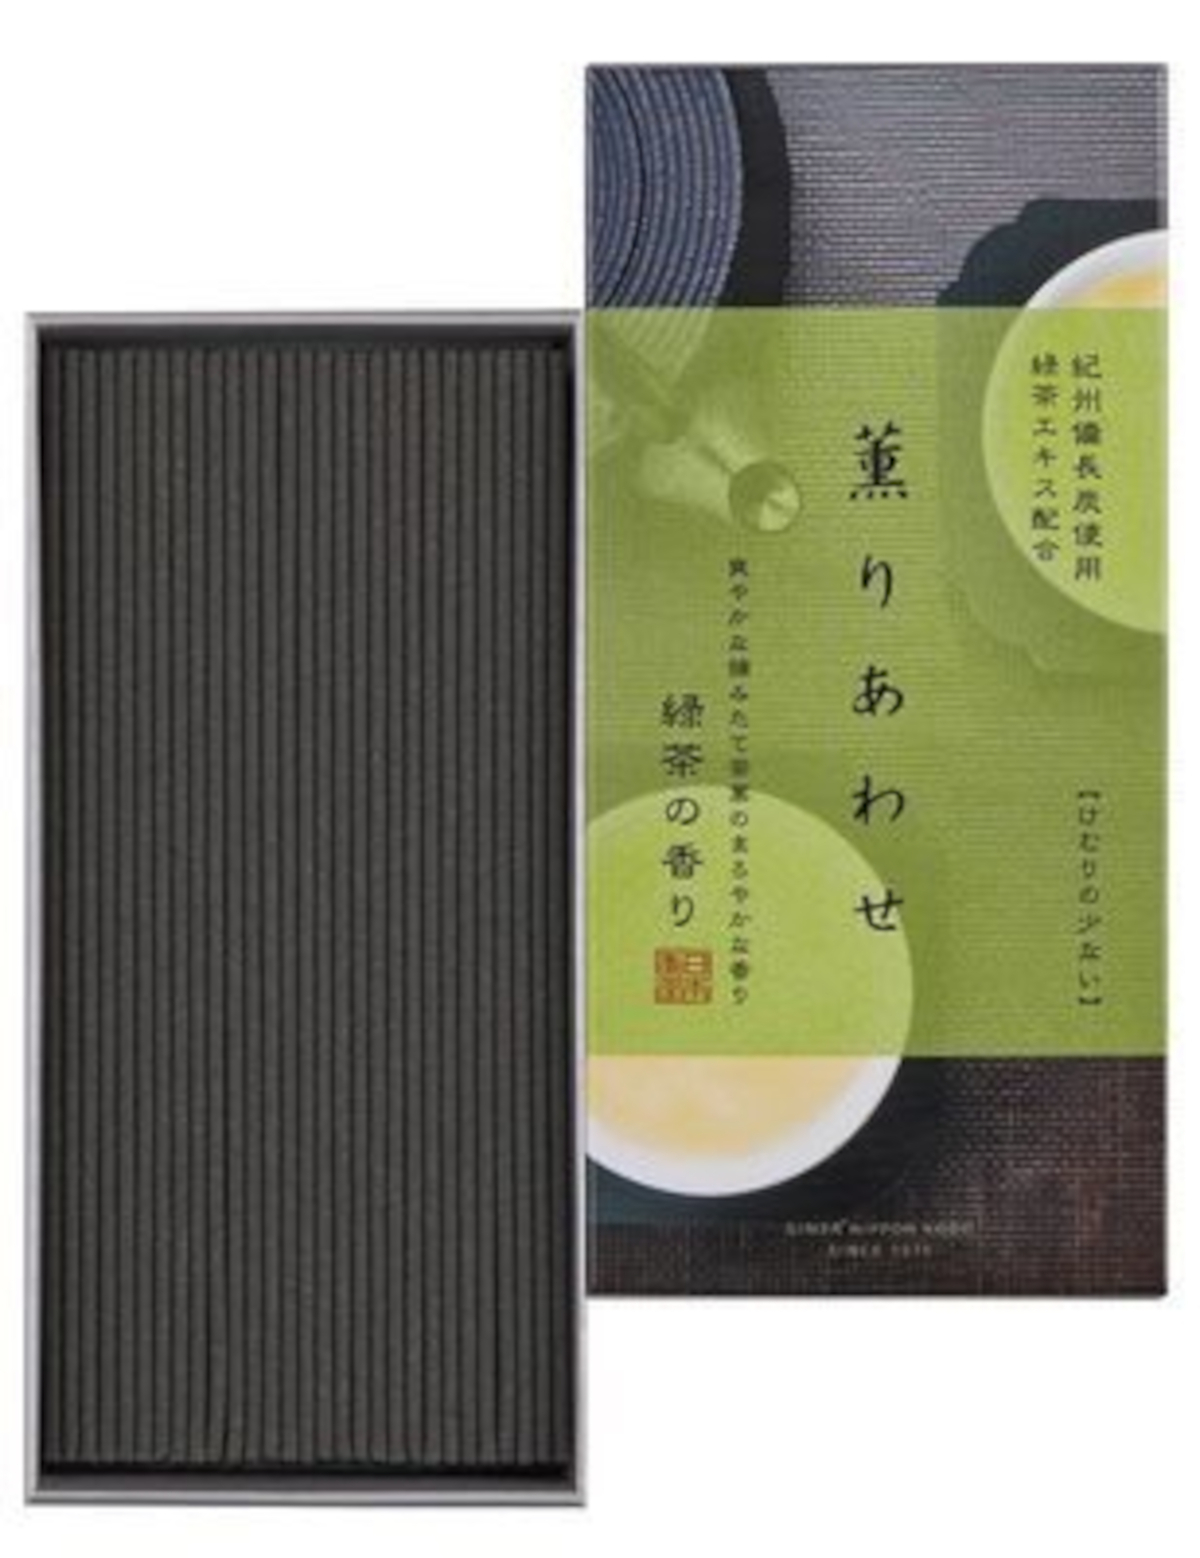 Благовоние Kaori Awase Green Tea (зелёный чай), 170 палочек по 14 см